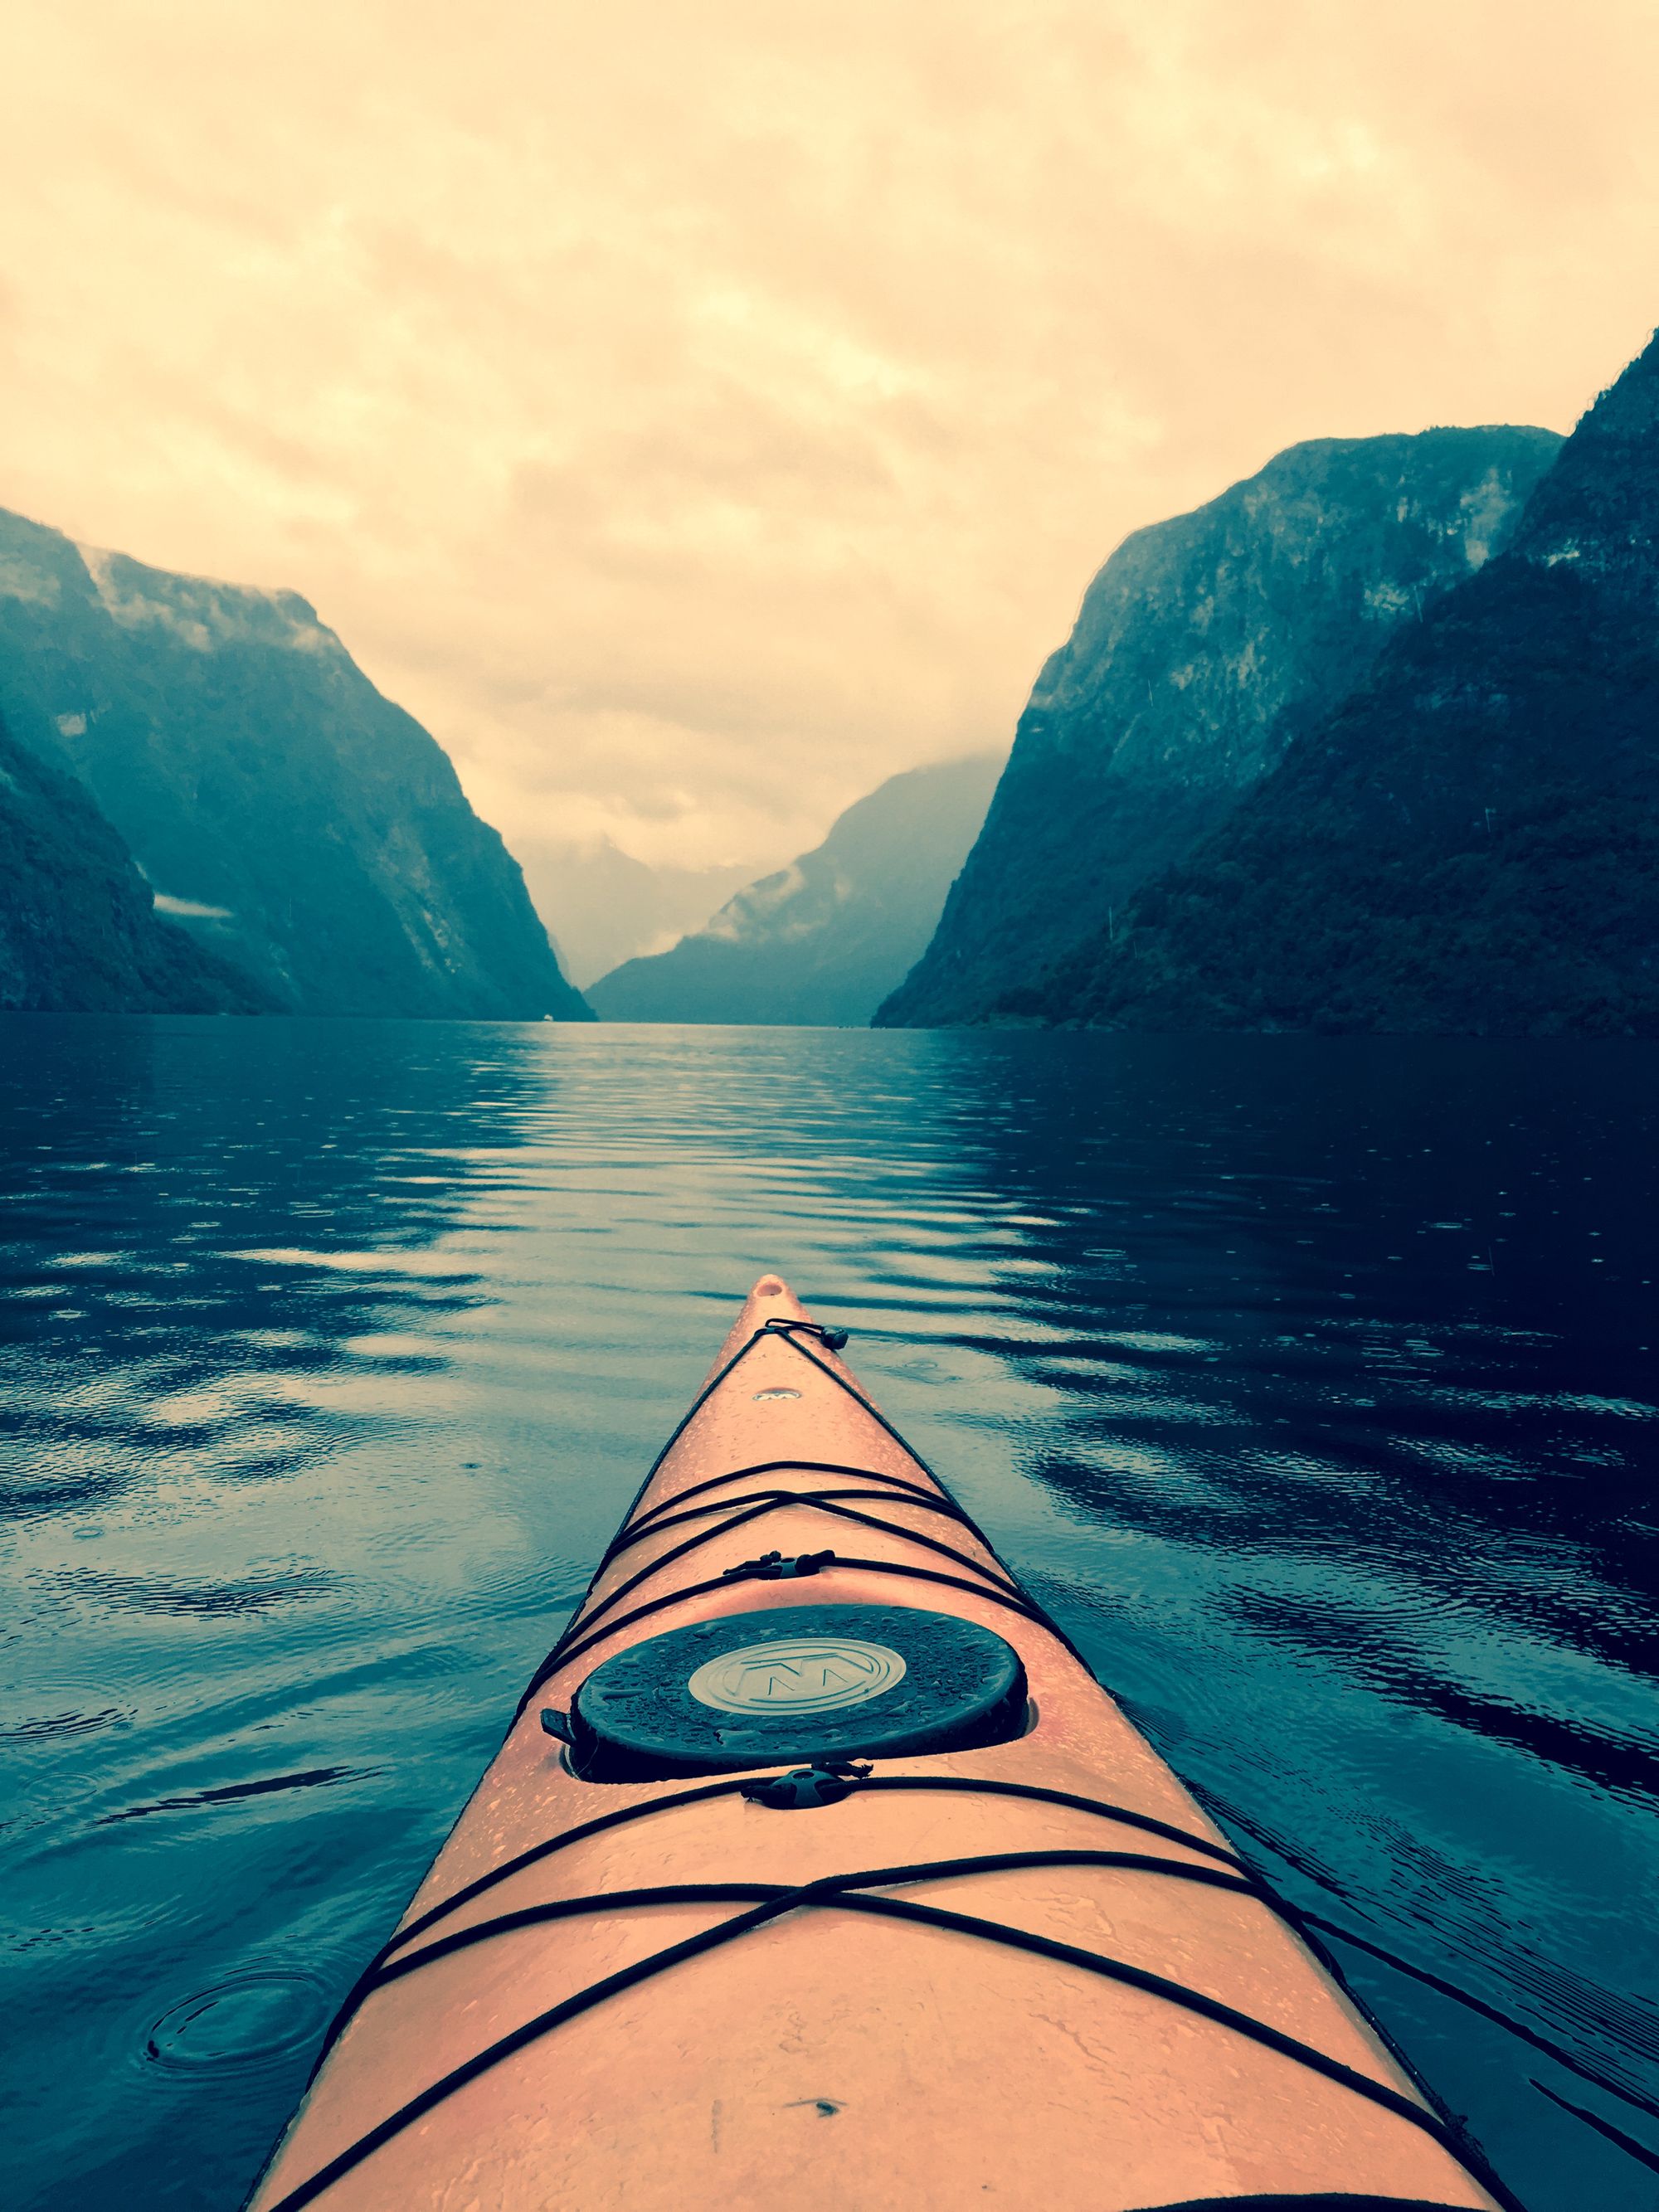 Kayaking on the Norwegian fjords.